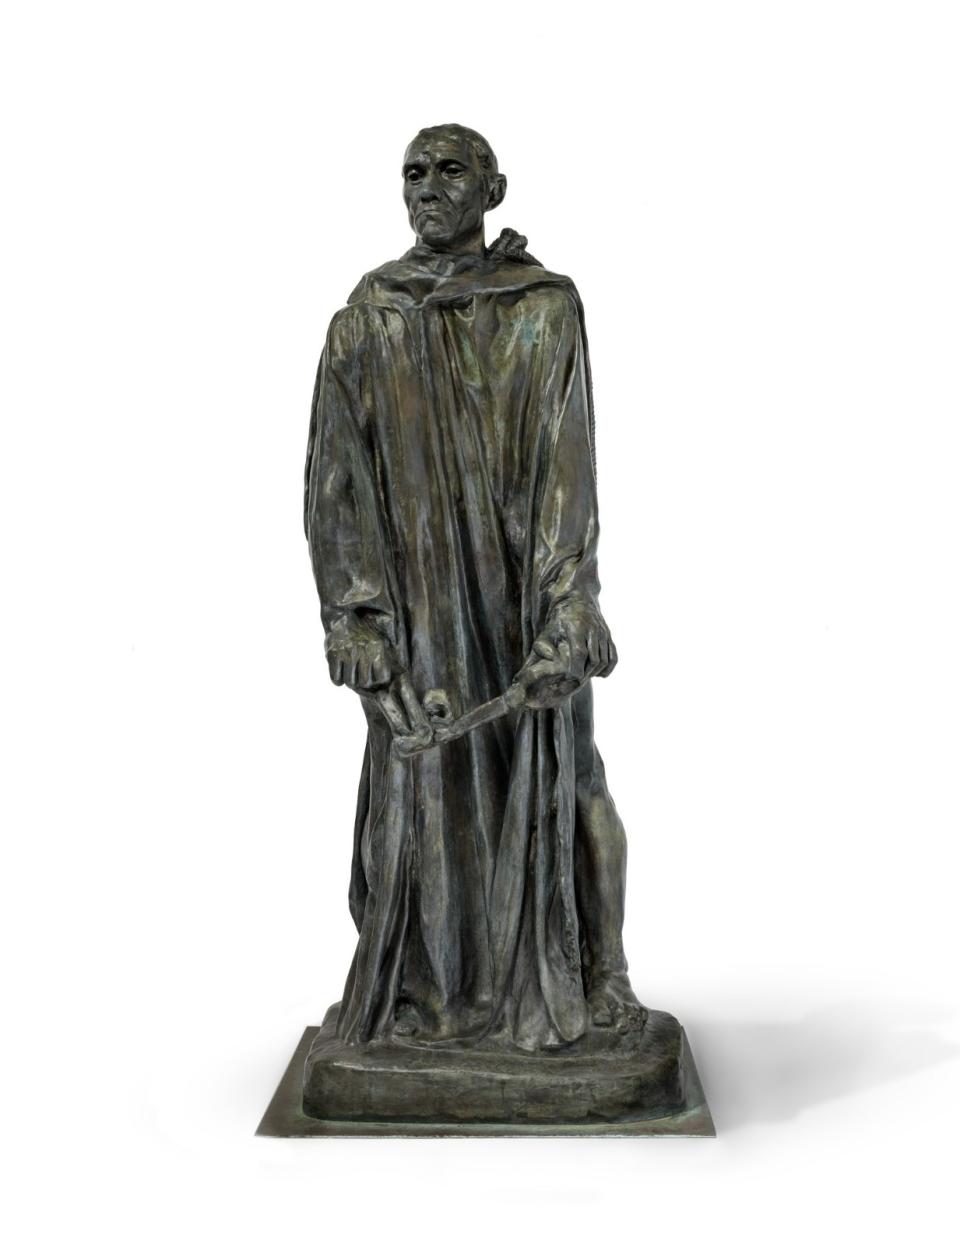 奧古斯丁．羅丹（Auguste Rodin, 1840–1917），〈尚．德爾〉(Jean d'Aire)，原型塑於約1886年，本作翻鑄於1972年，青銅，216 x 85 x 72 cm，Los Angeles County Museum of Art, gift of B. Gerald Cantor, photo © Museum Associates/LACMA。〈尚．德爾〉為羅丹最為人討論的公共藝術重要作品〈加萊義民〉(The Burghers of Calais) 其中之一。